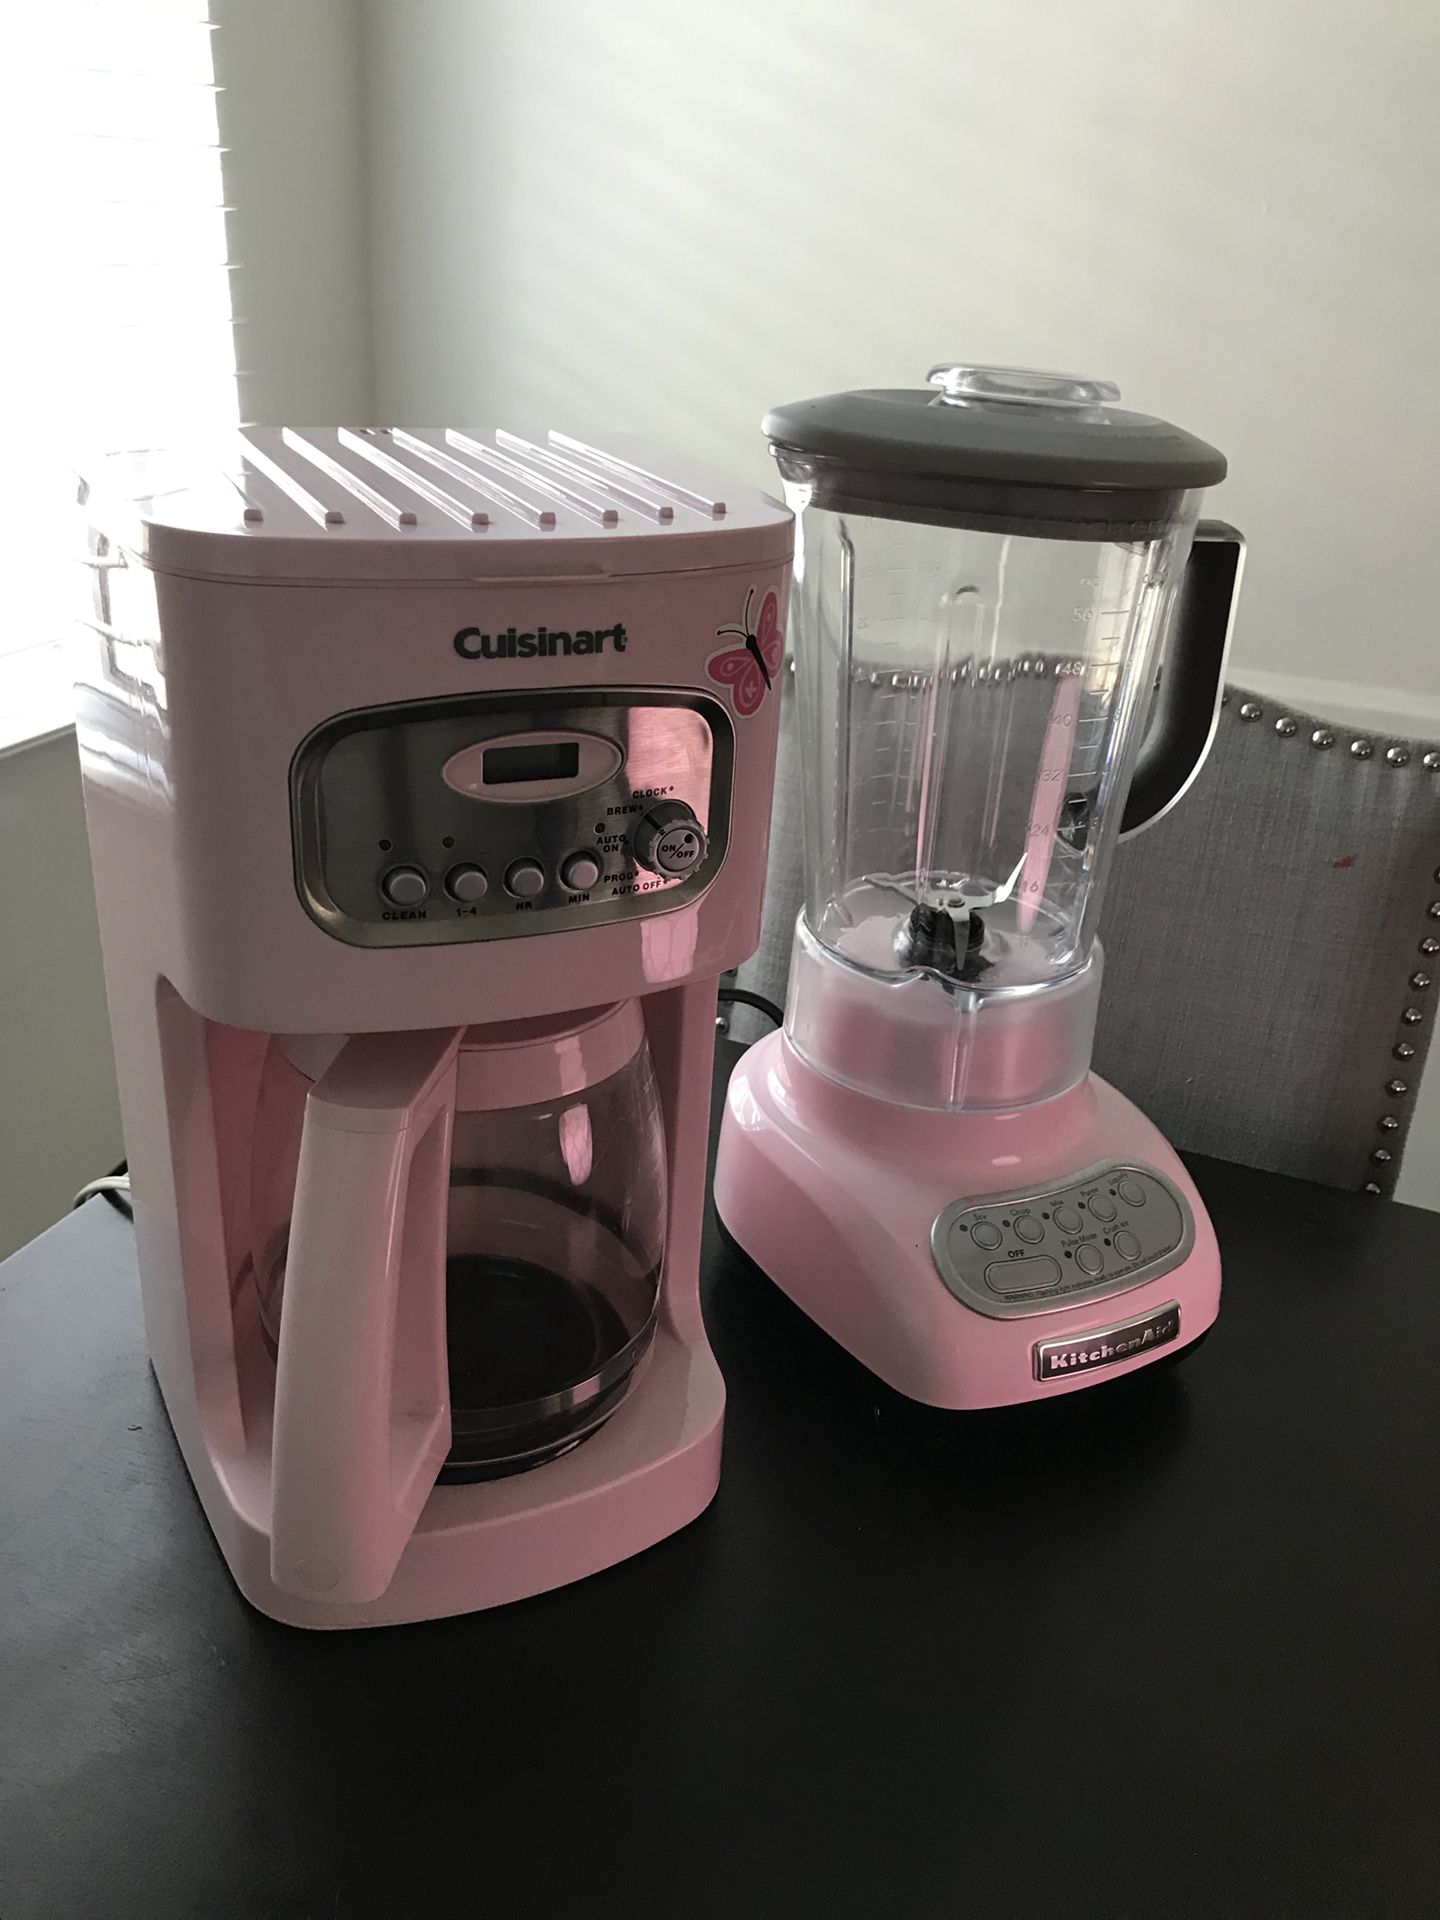 Keurig Pink Coffee Maker for Sale in Beaverton, OR - OfferUp